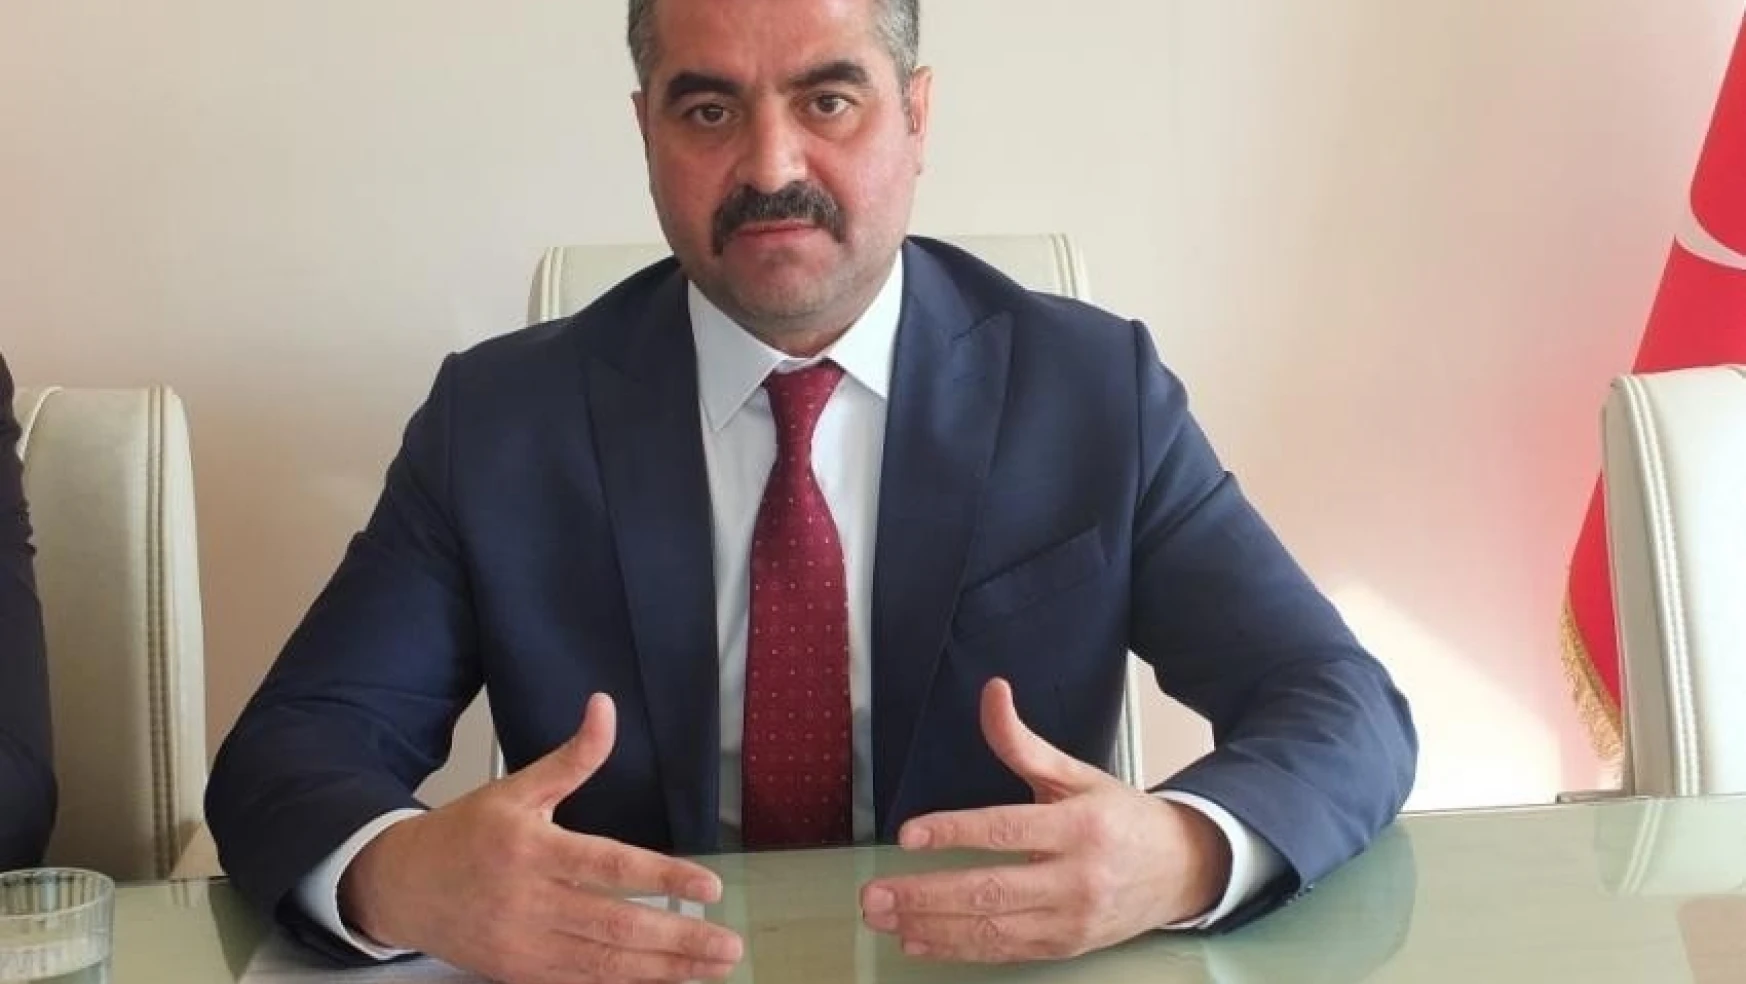 Avşar Doğu Türkistan'a yapılan zulmü kınadı